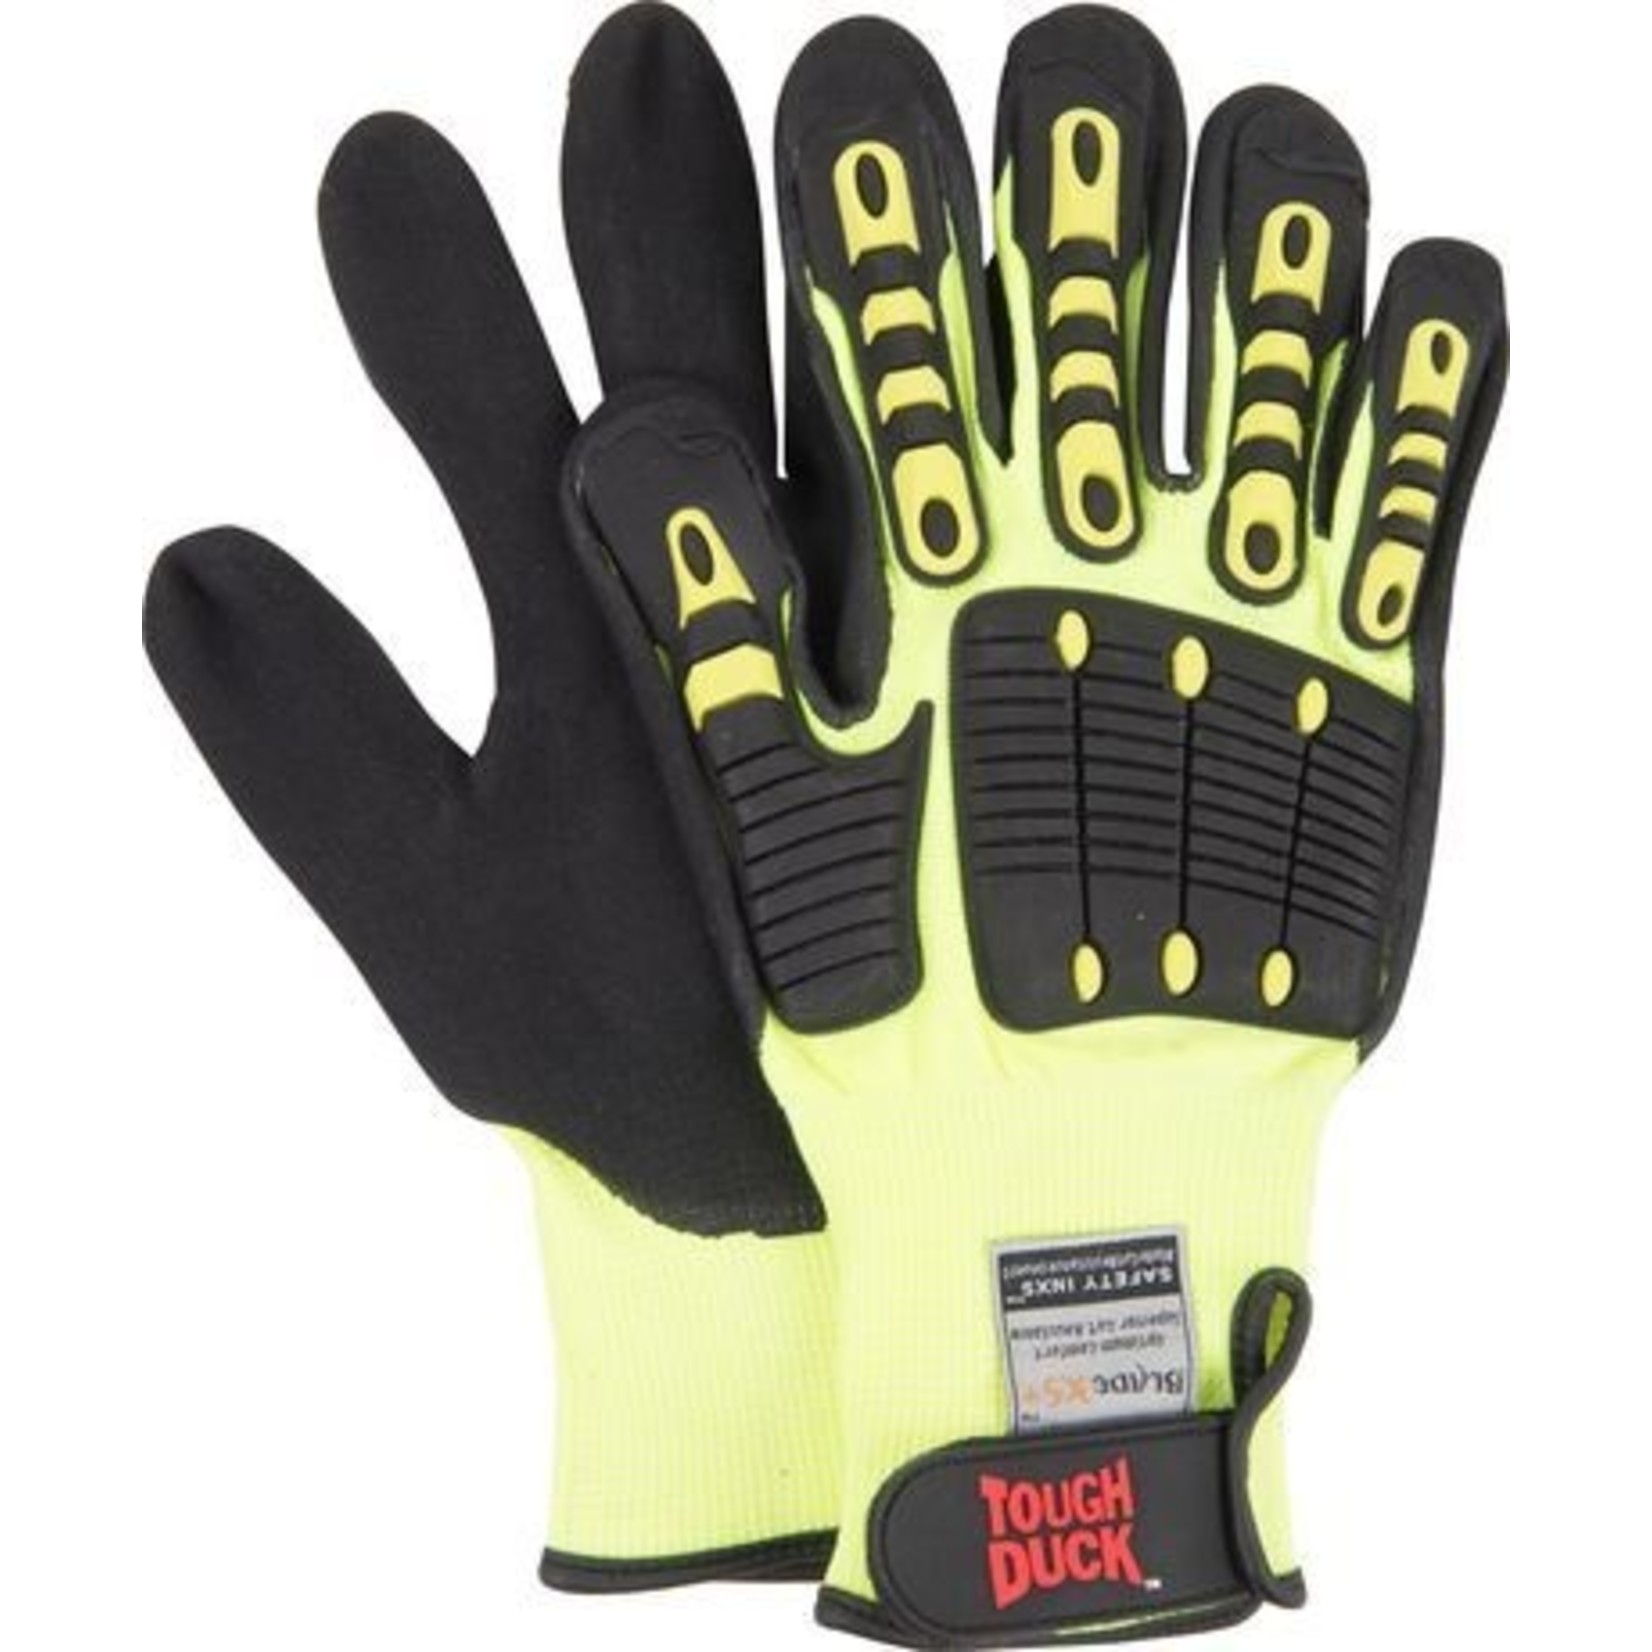 Tough Duck Hi-vis cut resistant glove